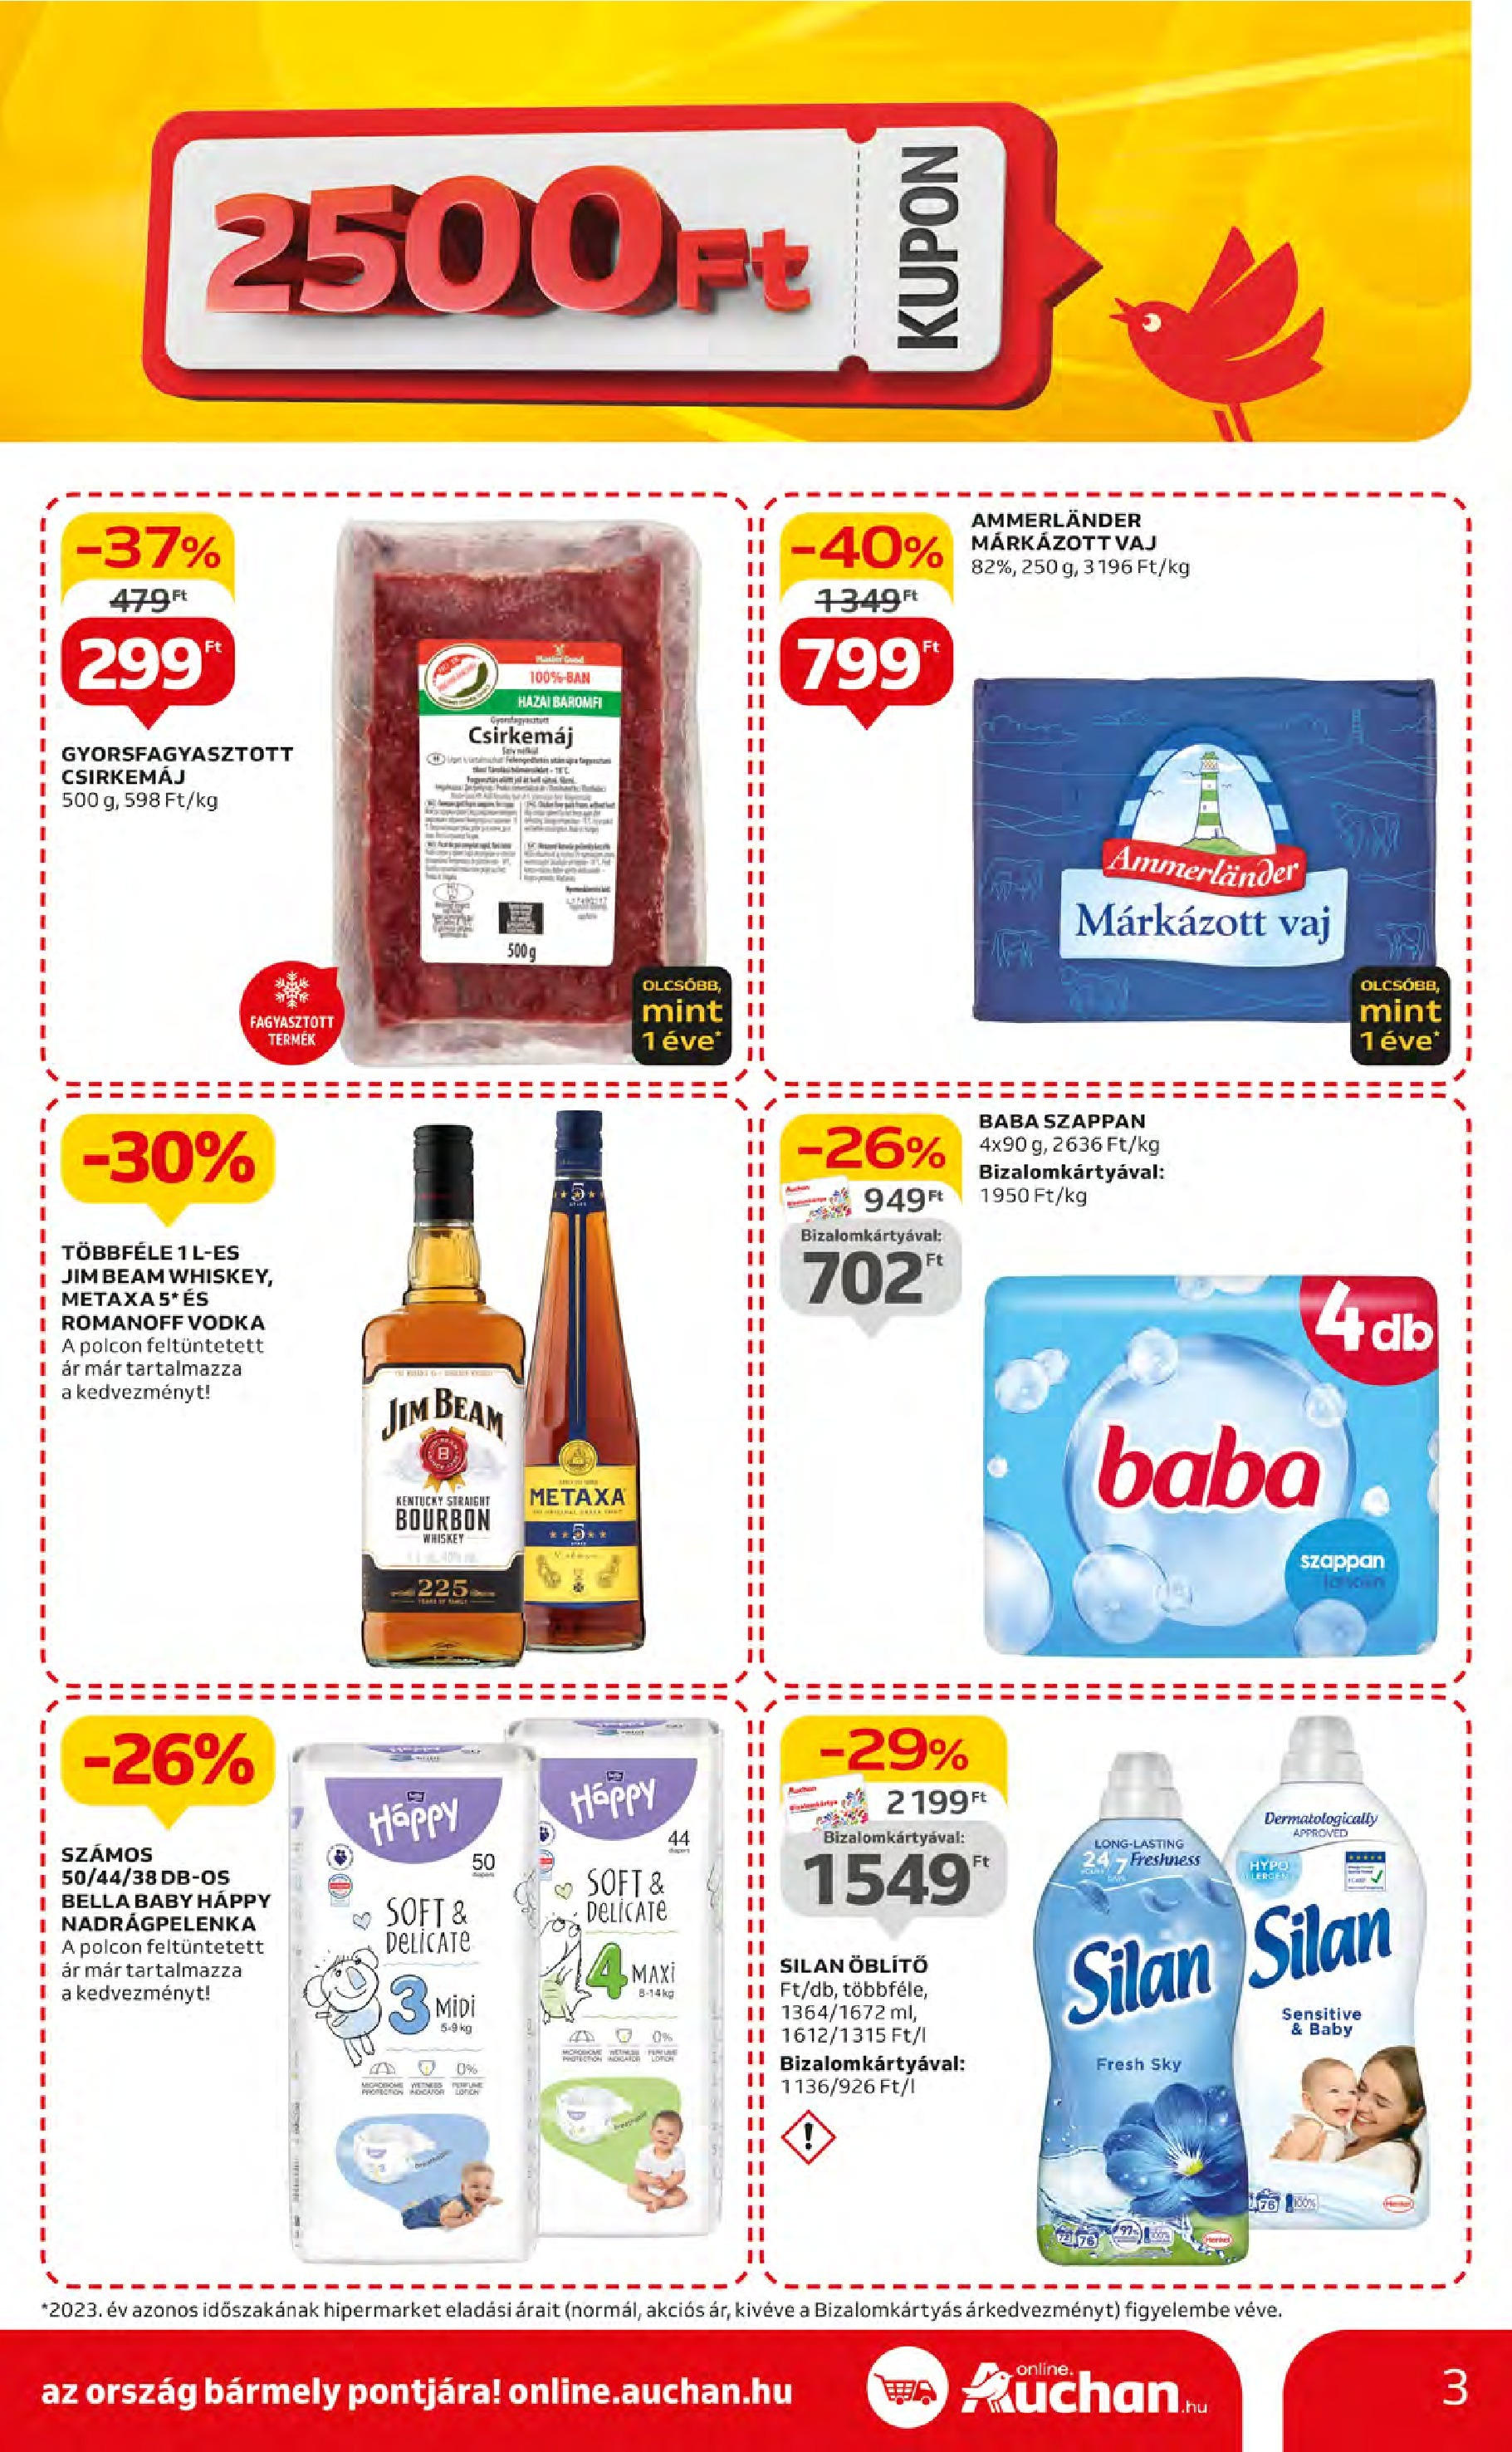 Auchan  Akciós újság - 2024.05.09. -tól/töl > akció, szórólap 🛍️ | Oldal: 3 | Termékek: Whiskey, Öblítő, Vaj, Vodka